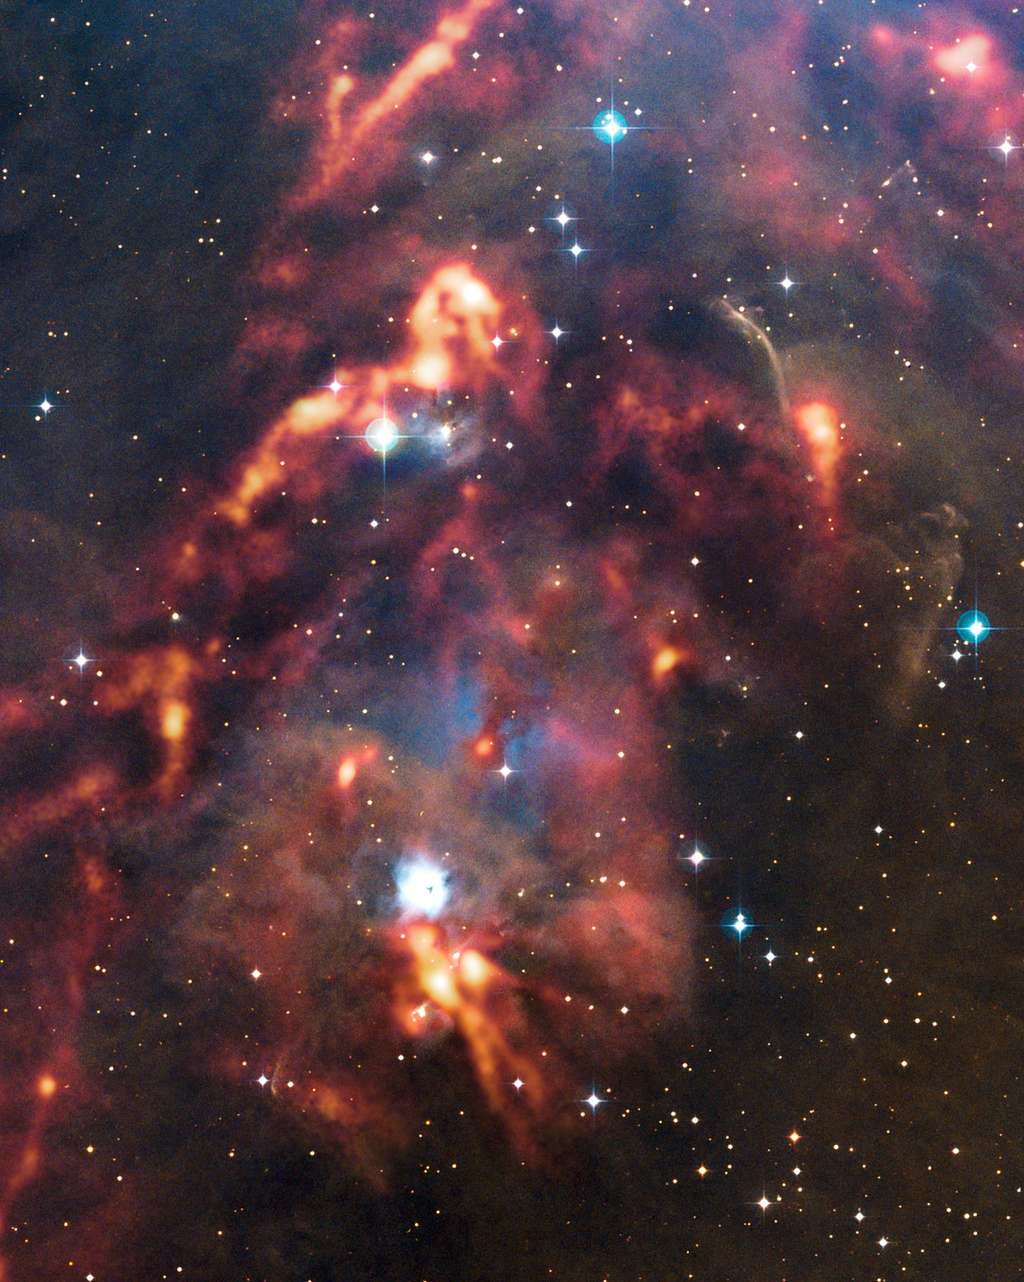 Une nouvelle image du télescope Apex (<em>Atacama Pathfinder Experiment</em>) au Chili montre une vue magnifique de nuages de poussière cosmique dans la région d'Orion. Alors que ces nuages interstellaires denses semblent sombres et obscurs sur les observations en lumière visible, la caméra Laboca d'Apex peut détecter le rayonnement de chaleur de la poussière et révéler l'emplacement caché où se forment les nouvelles étoiles. Cette image montre la région autour de la nébuleuse par réflexion NGC 1999 en lumière visible, avec les observations d'Apex superposées dans les tons brillants orange qui semblent mettre le feu aux nuages sombres. © ESO, Apex (MPIfR, ESO, OSO), T. Stanke <em>et al.</em>, <em>Digitized Sky Survey 2</em>